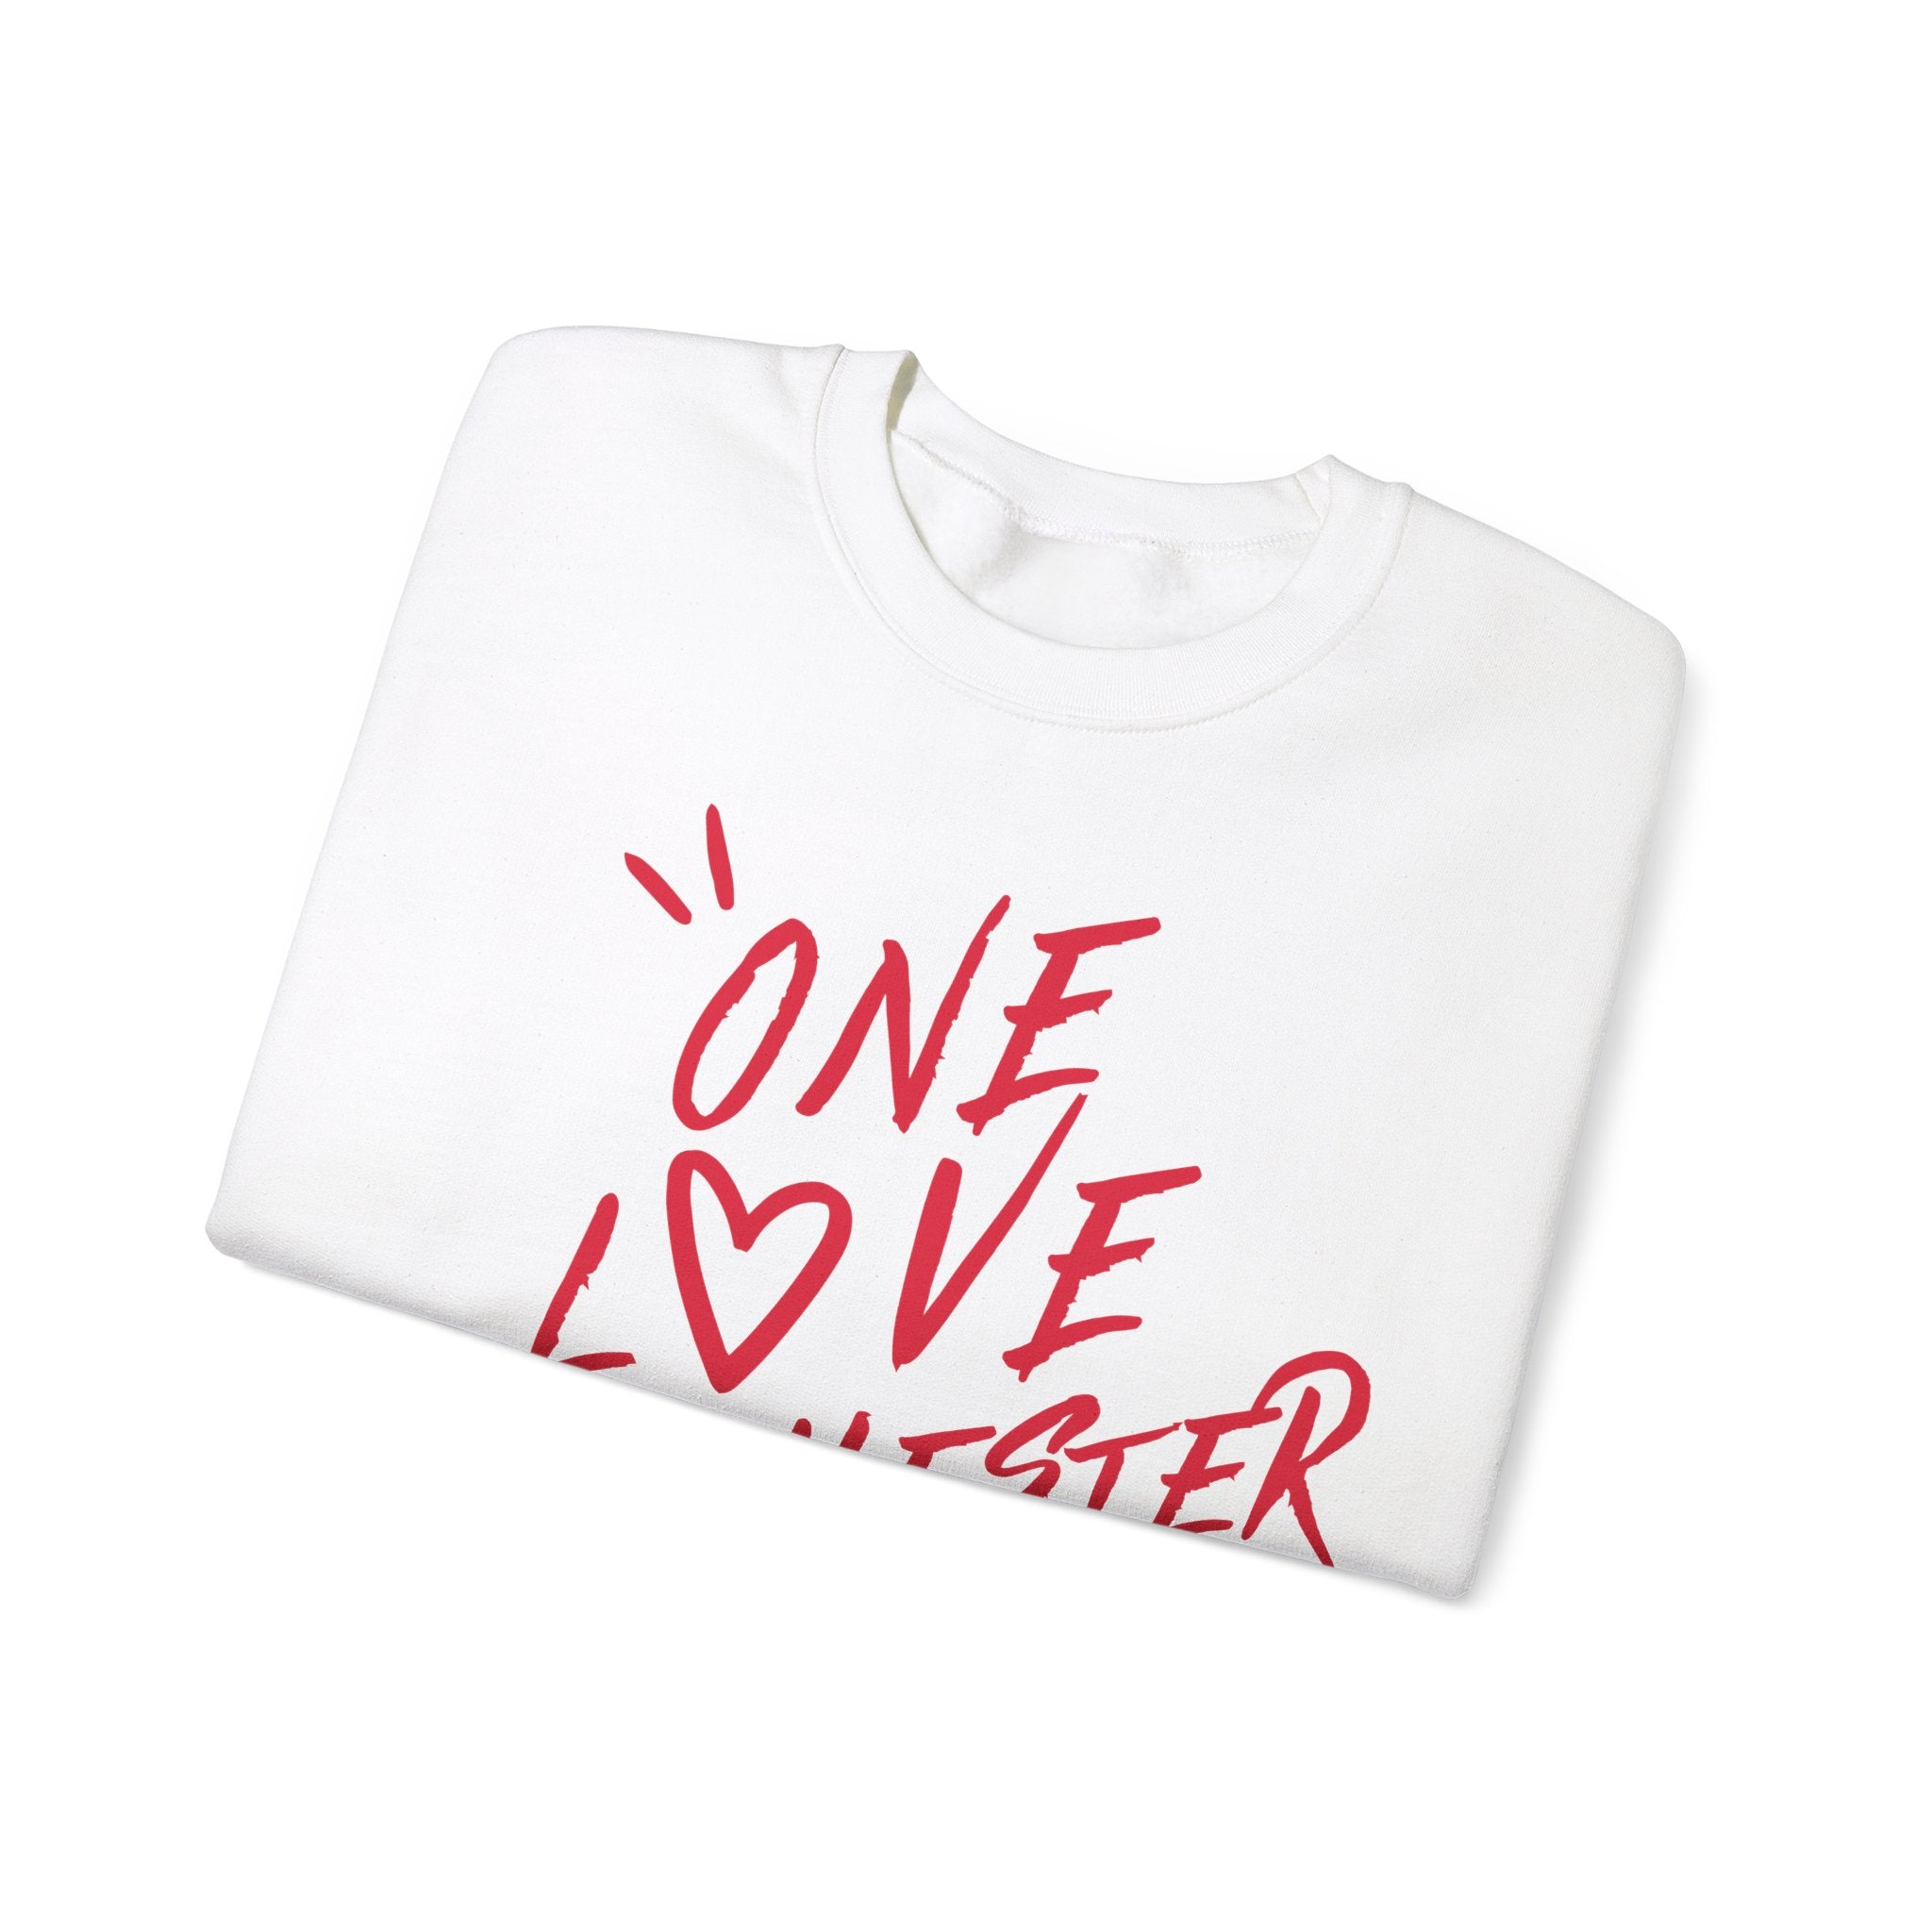 One Love Manchester - Unisex Heavy Blend™ Crewneck Sweatshirt